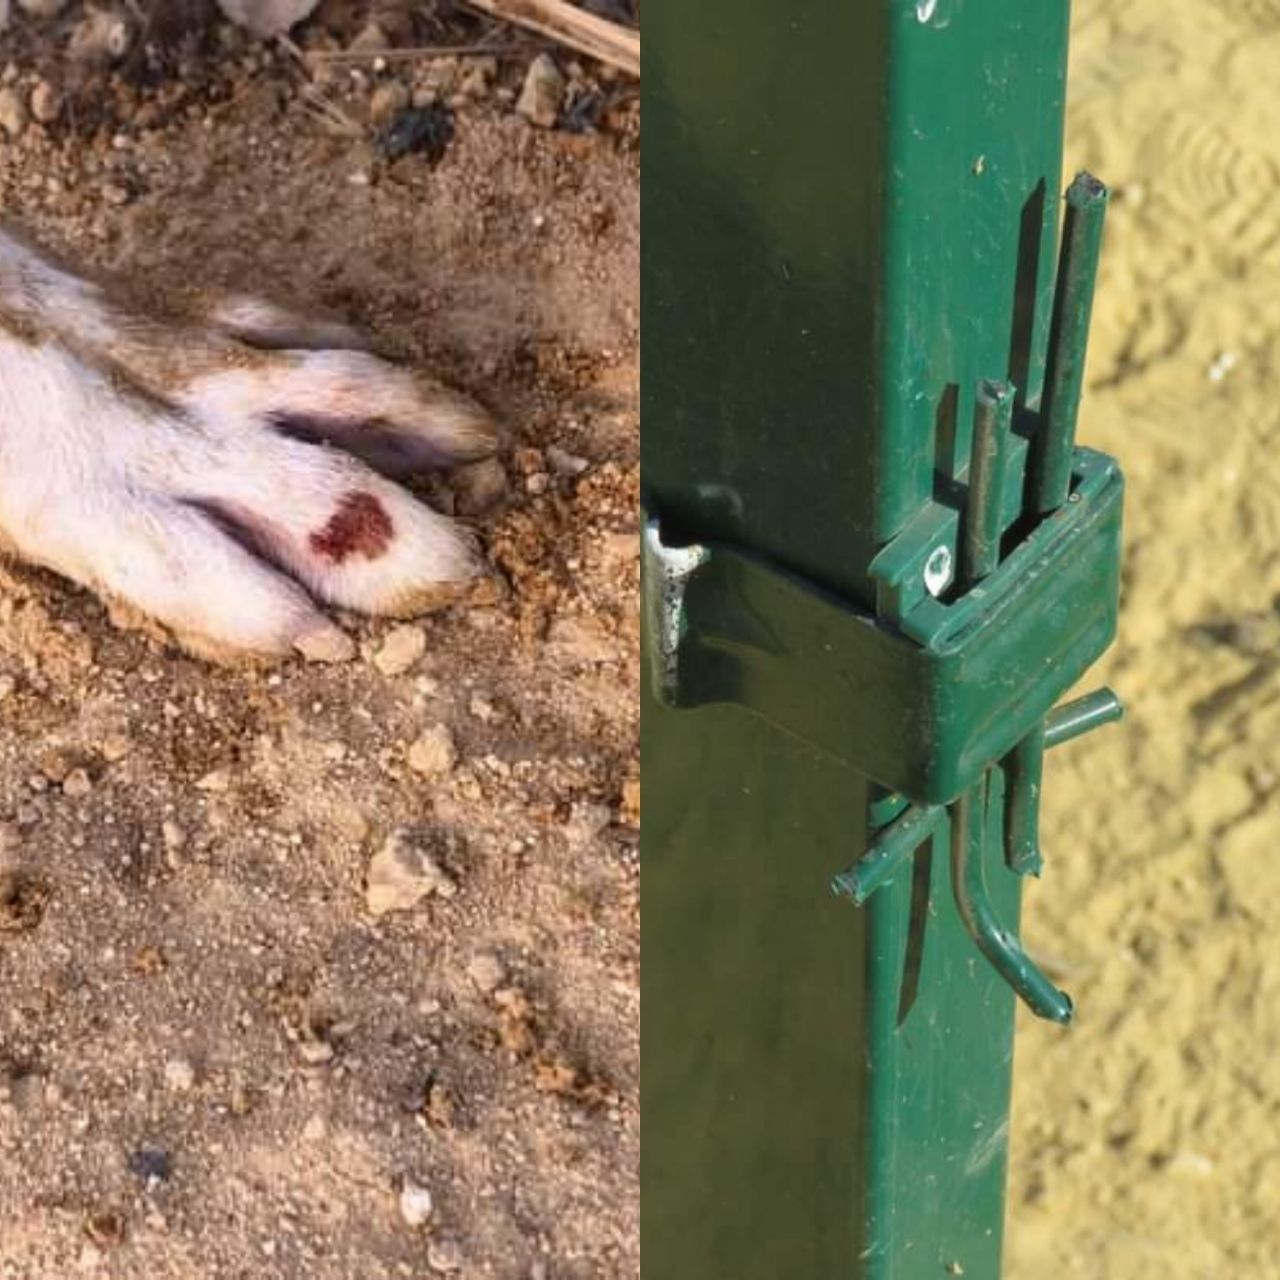 Denuncian las malas condiciones de las "zonas caninas" en Huelva: "Hay basura y cristales"